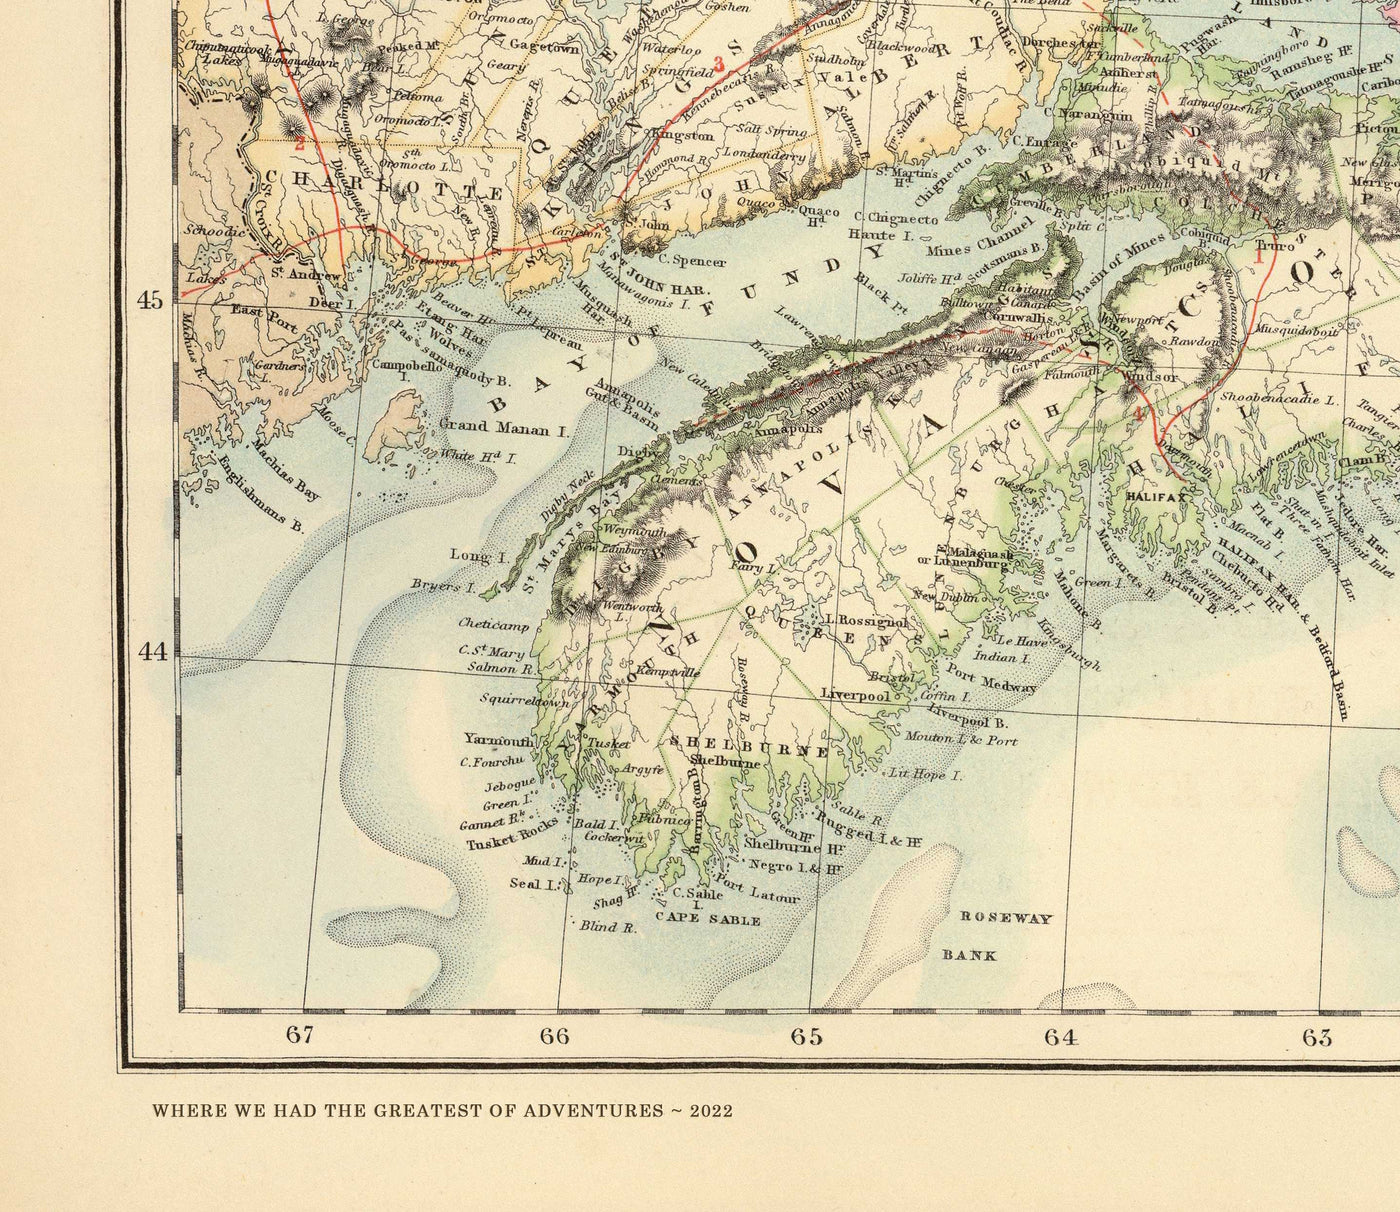 Ancienne carte des ports du sud-est de l'Angleterre, 1872 par Fullarton - Margate, Dover, Falmouth, Folkestone, Portsmouth